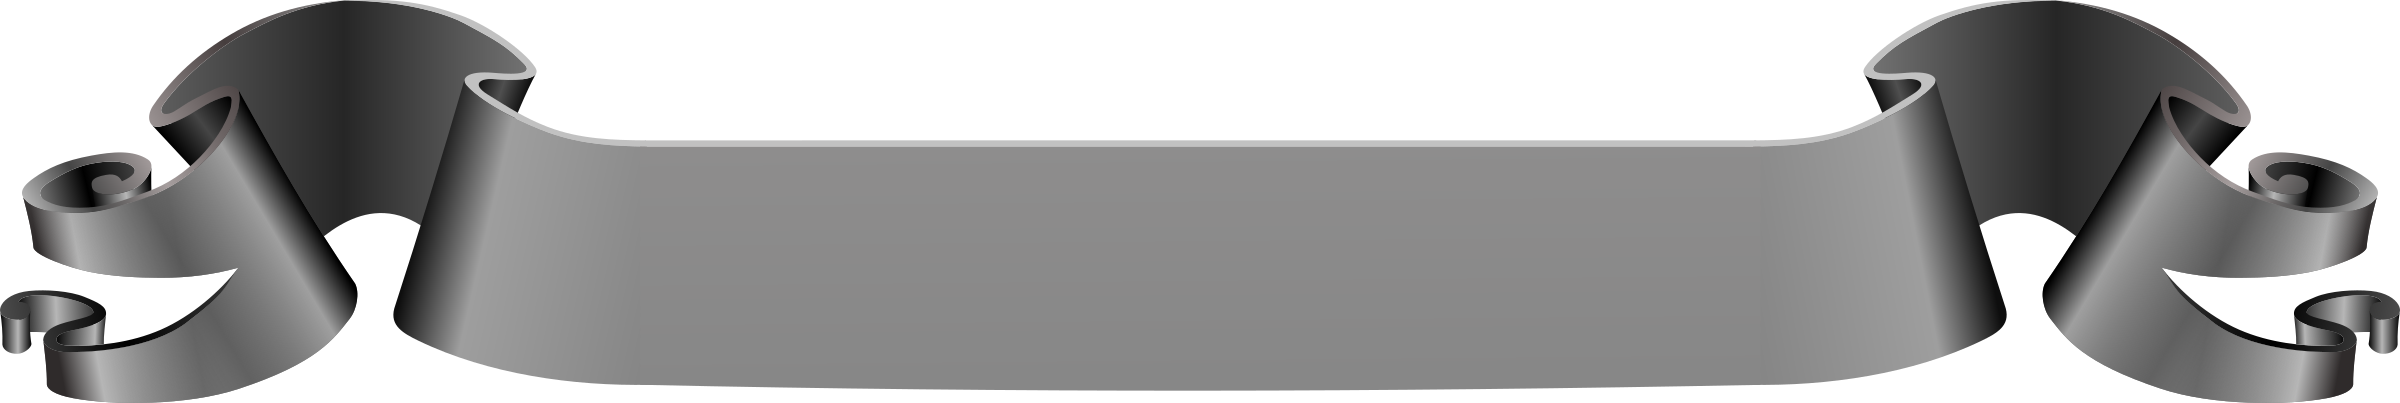 Grey Banner PNG Image Transparent